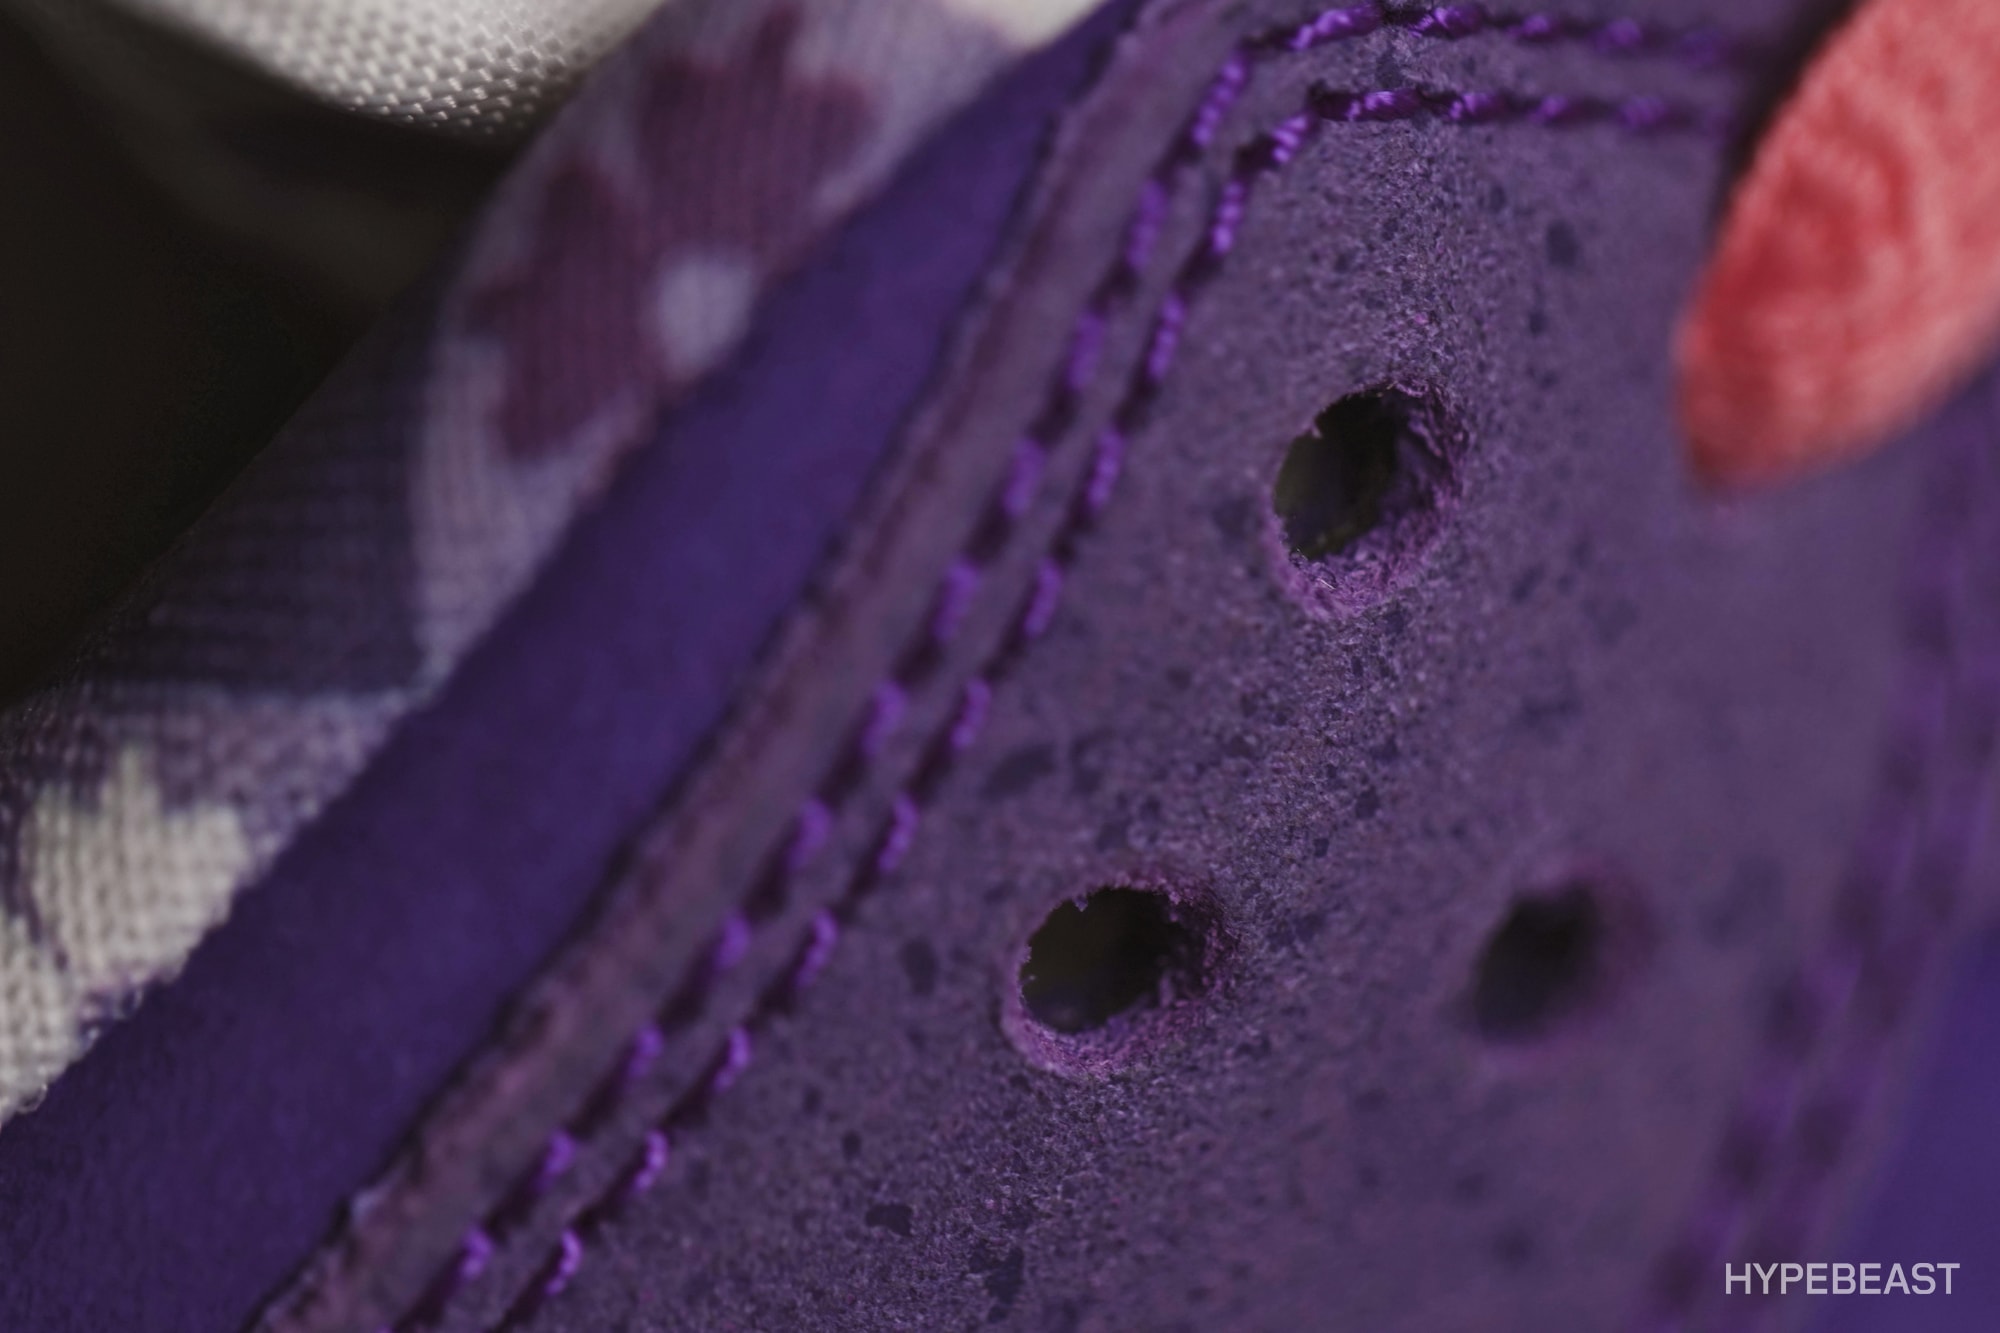 近賞 Concepts x Nike SB Dunk Low 全新 Purple Lobster